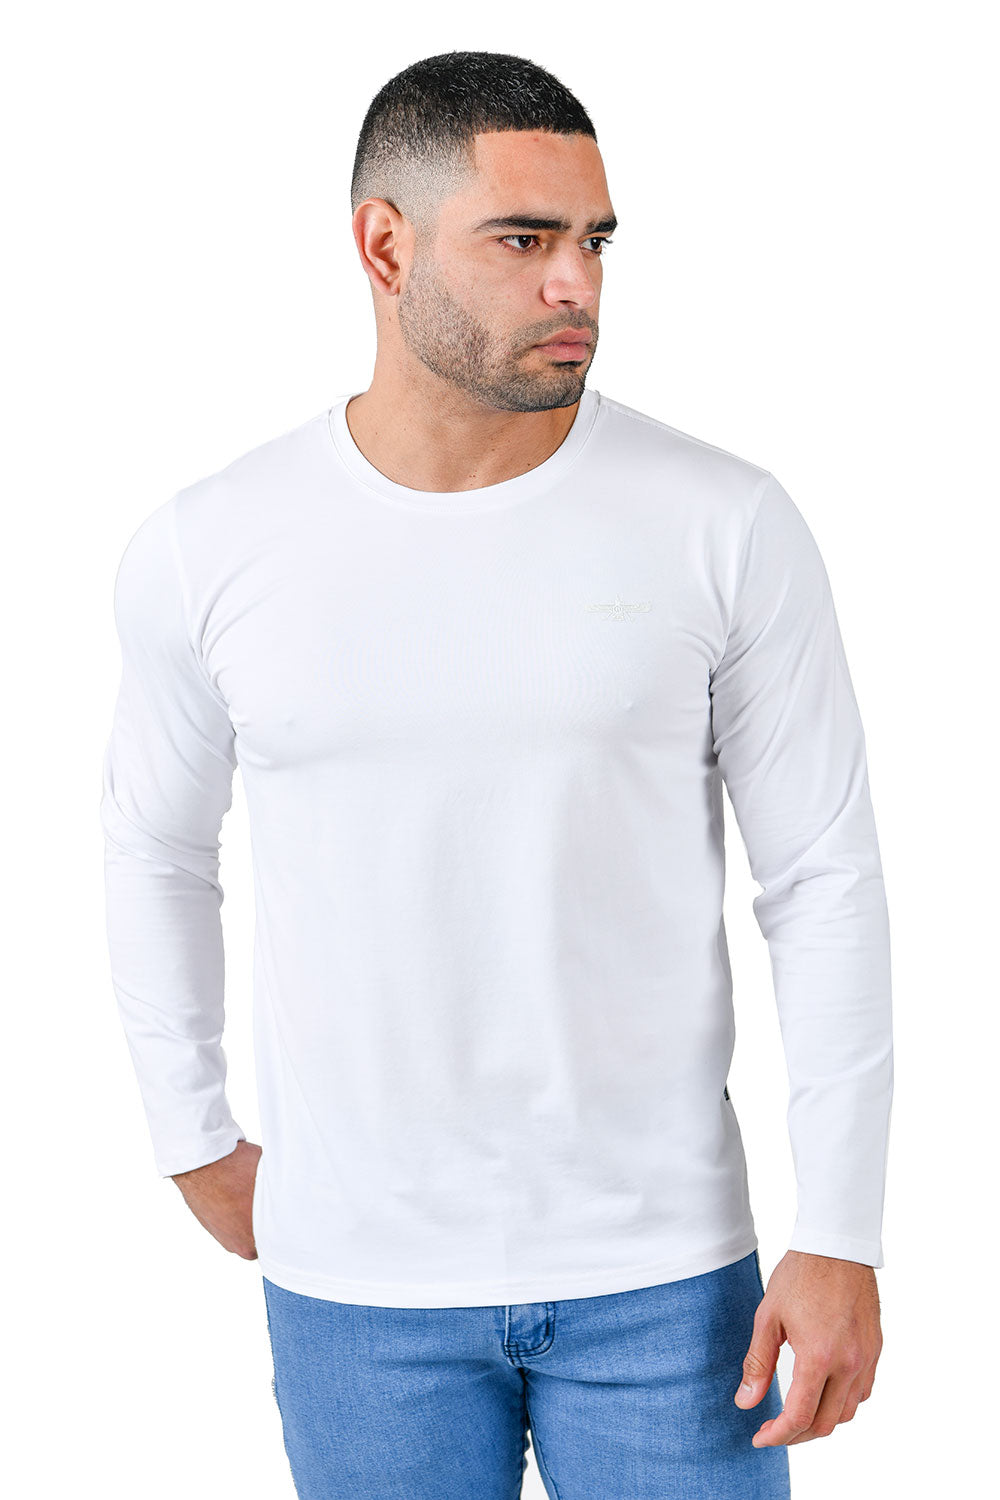 Barabas Men's Solid Color Crew Neck Sweatshirts LV127 White 